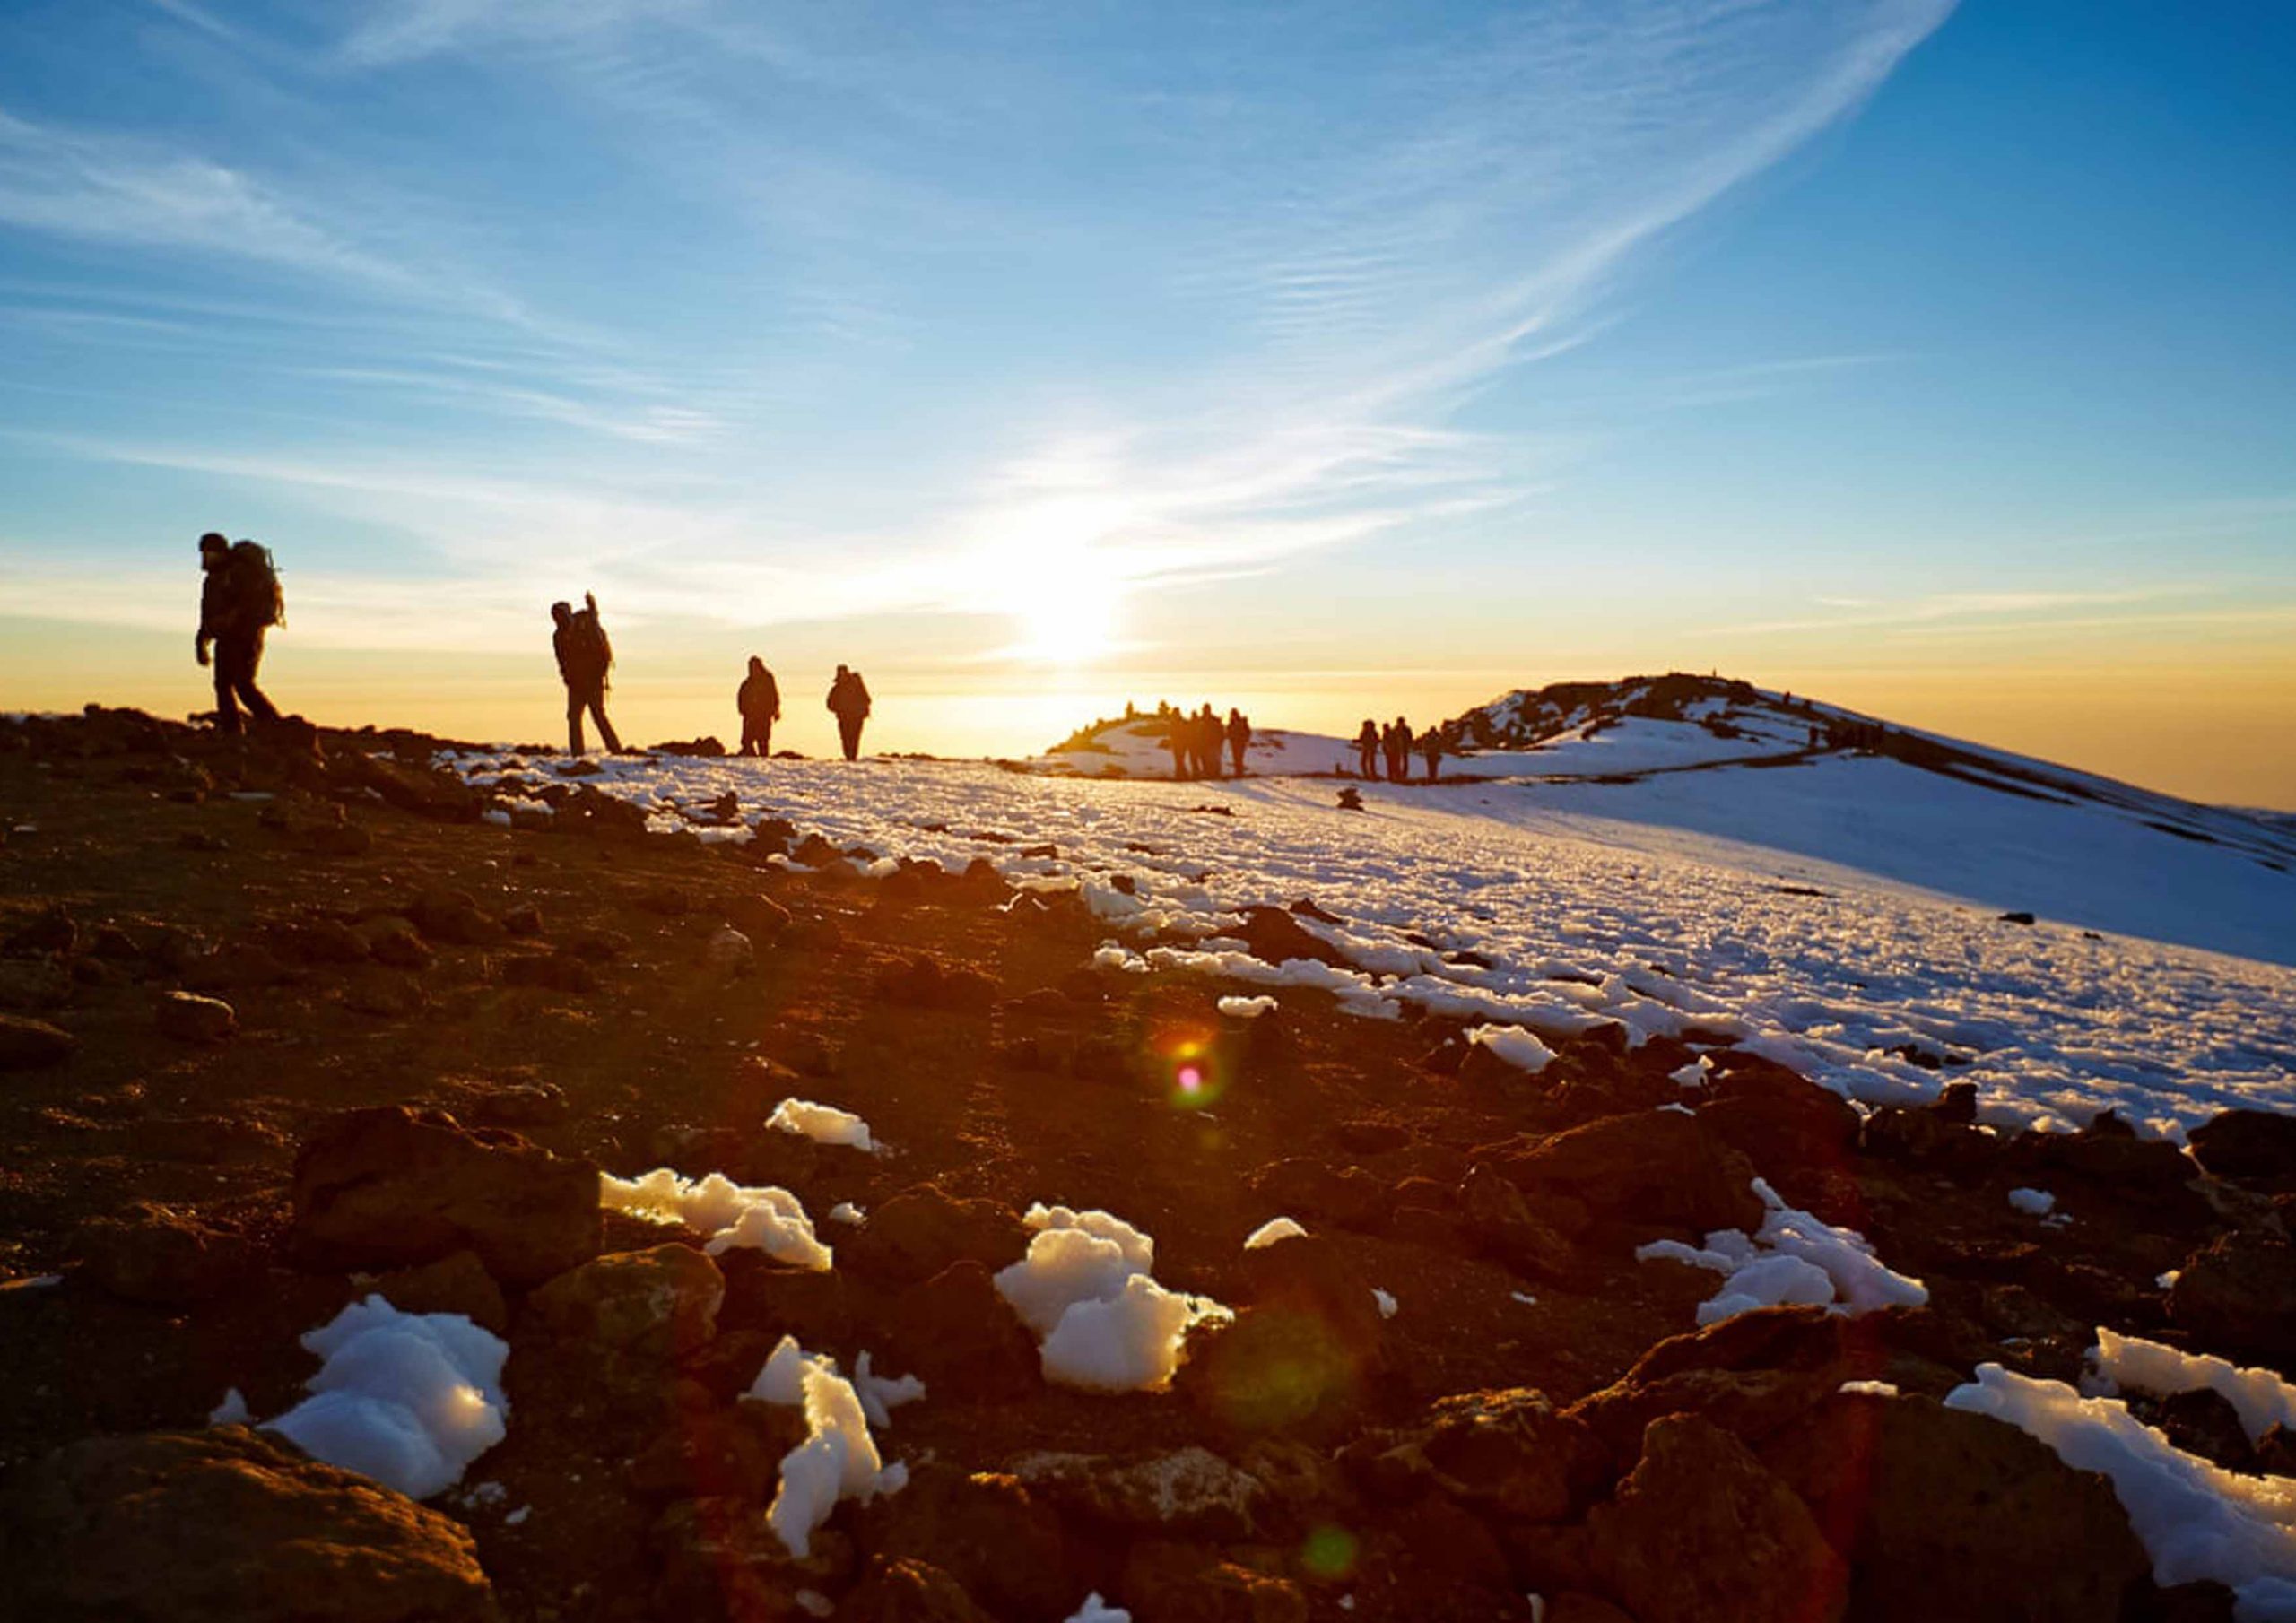 Climb Kilimanjaro in Tanzania